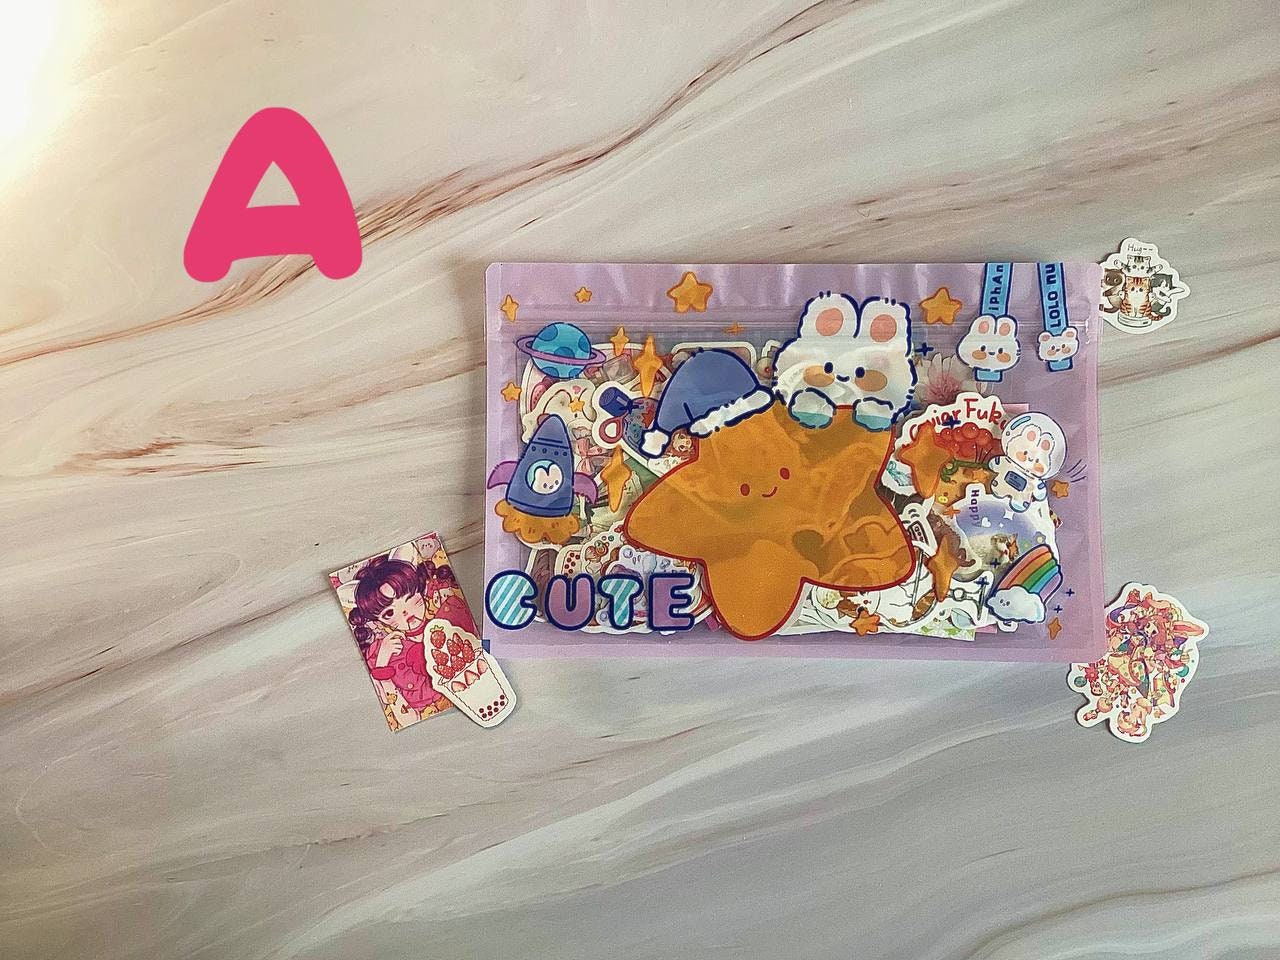 2pcs Cute Kawaii Glue Stick Cat Claw Glue for Paper Art DIY School